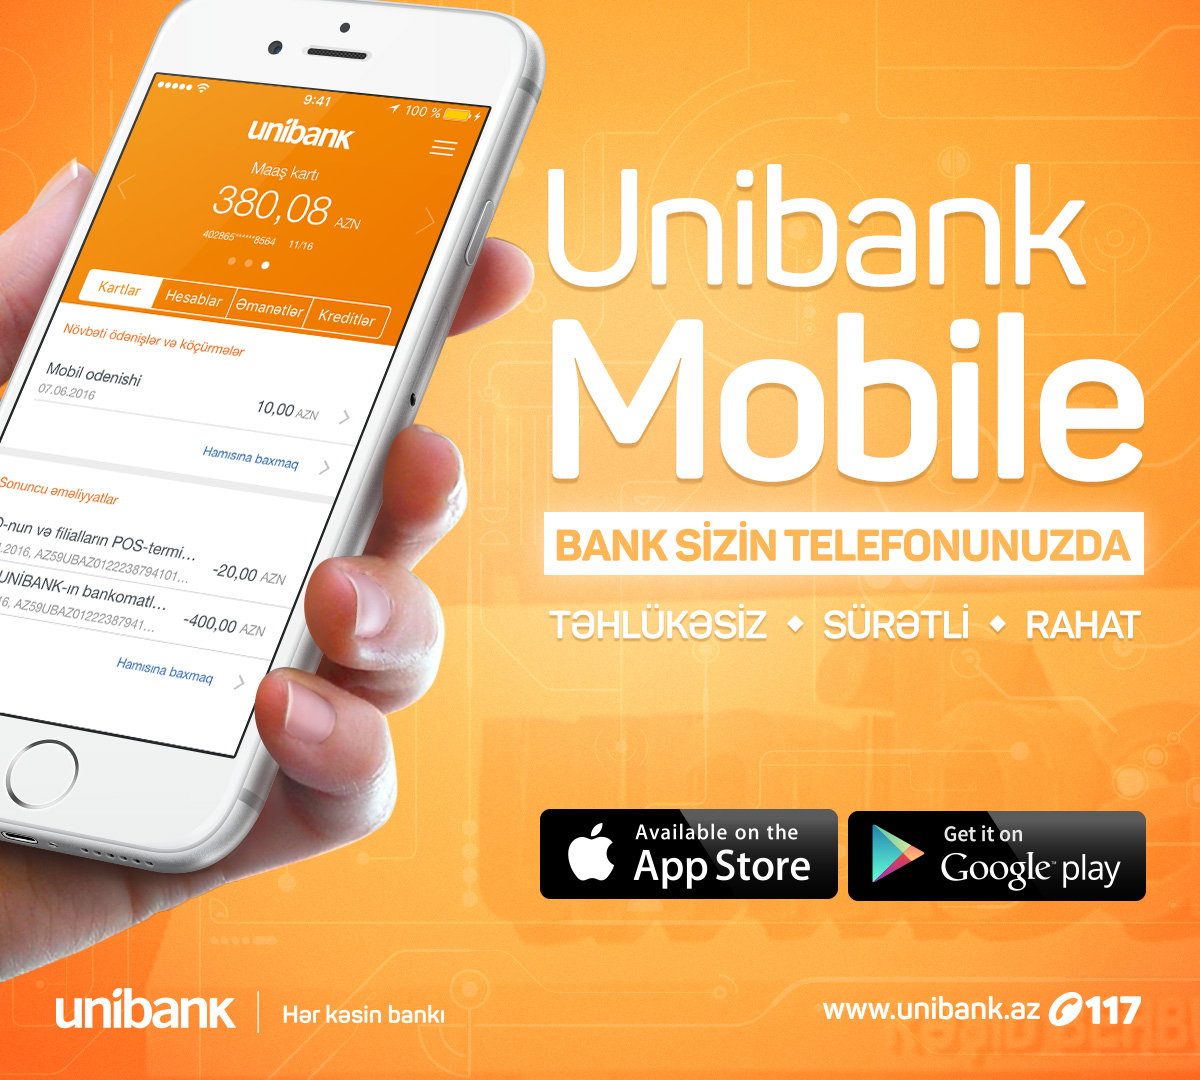 Unibank Mobile MDB məkanında  ən mükəmməl  mobil əlavələrdən biridir